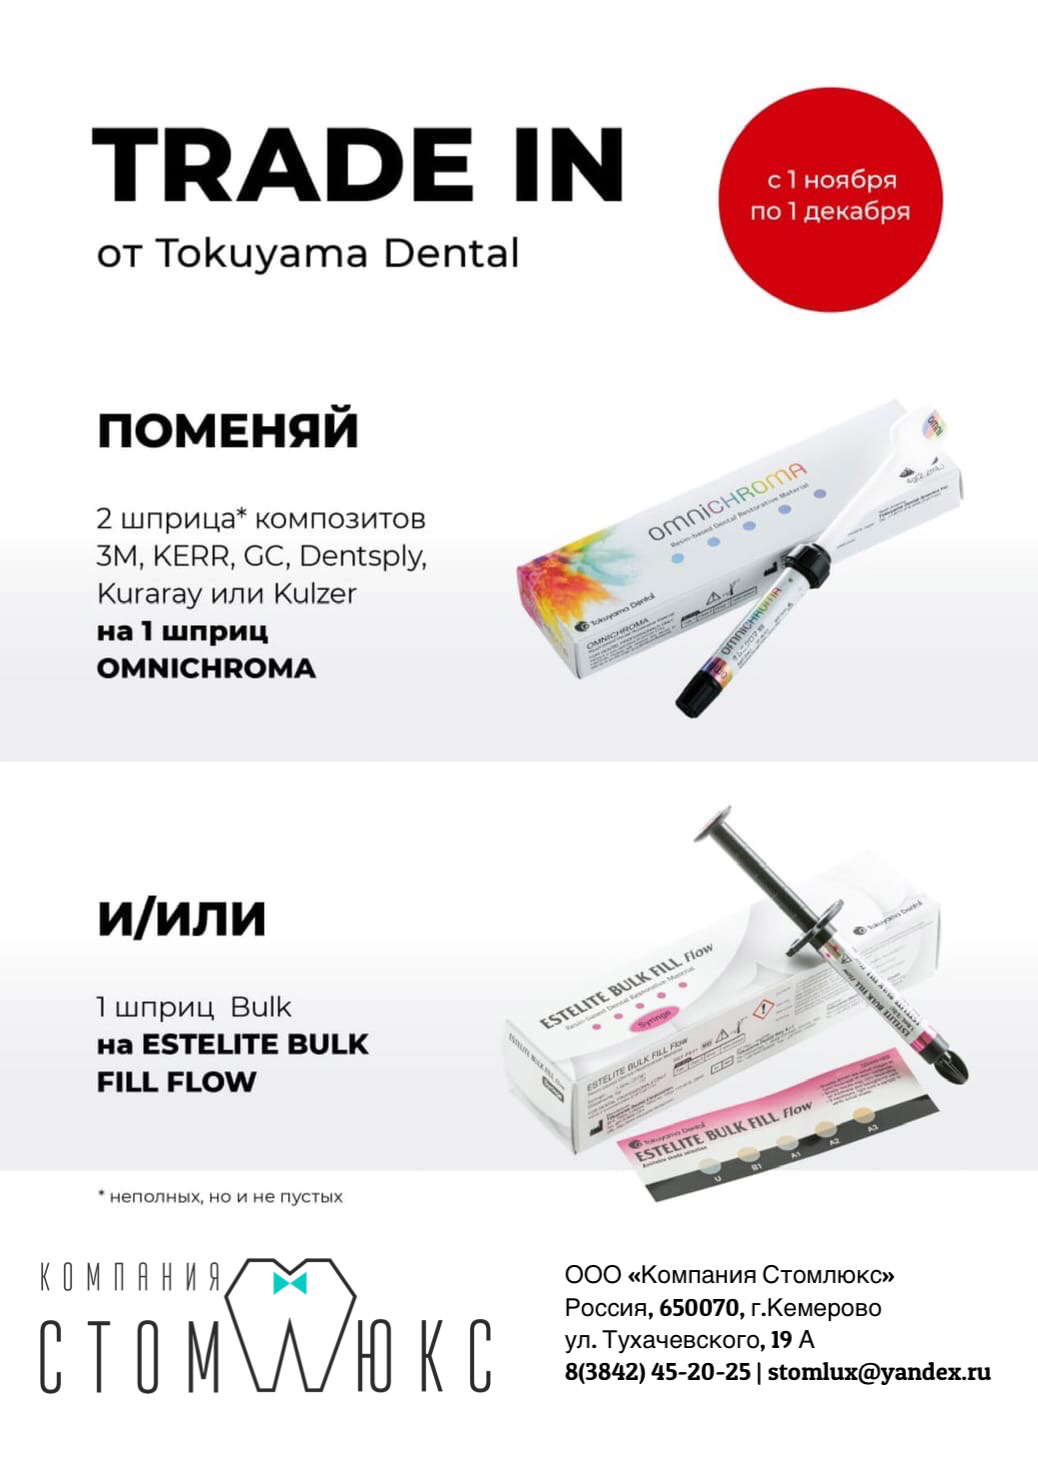  TRADE IN от Tokuyama Dental